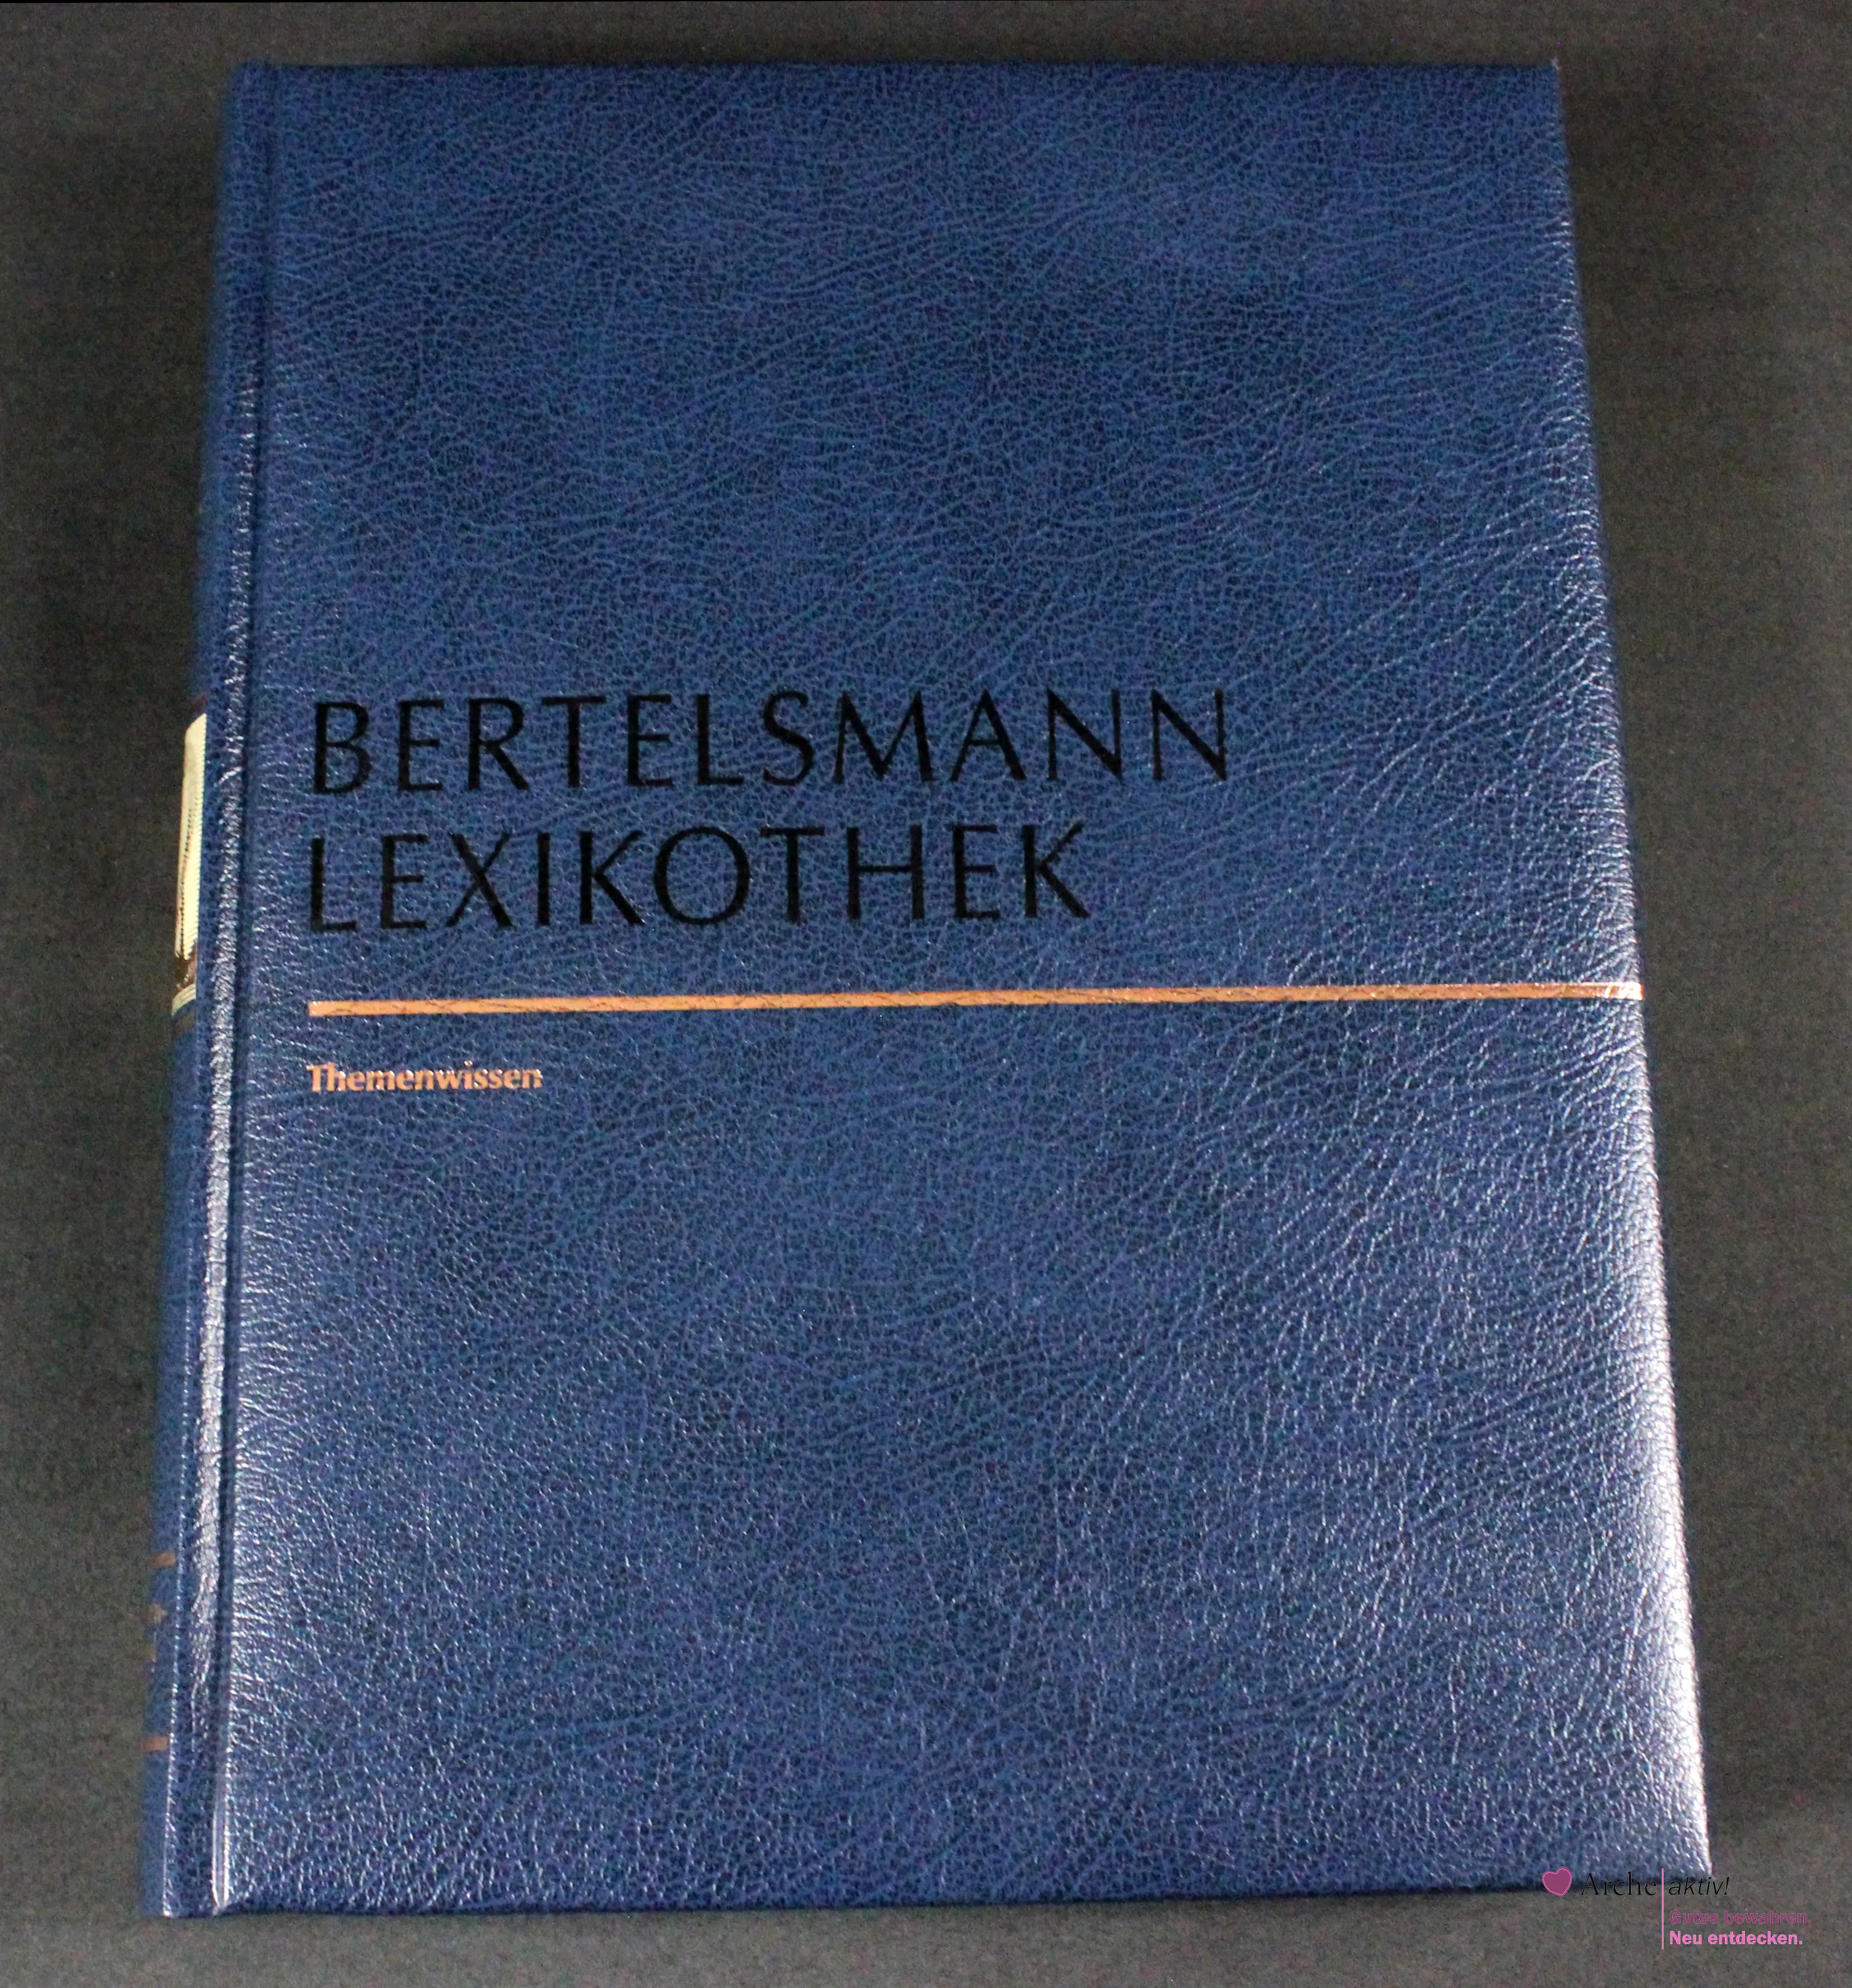 Bertelsmann Lexikothek - Themenwissen - Naturwissenschaft und Technik, gebraucht